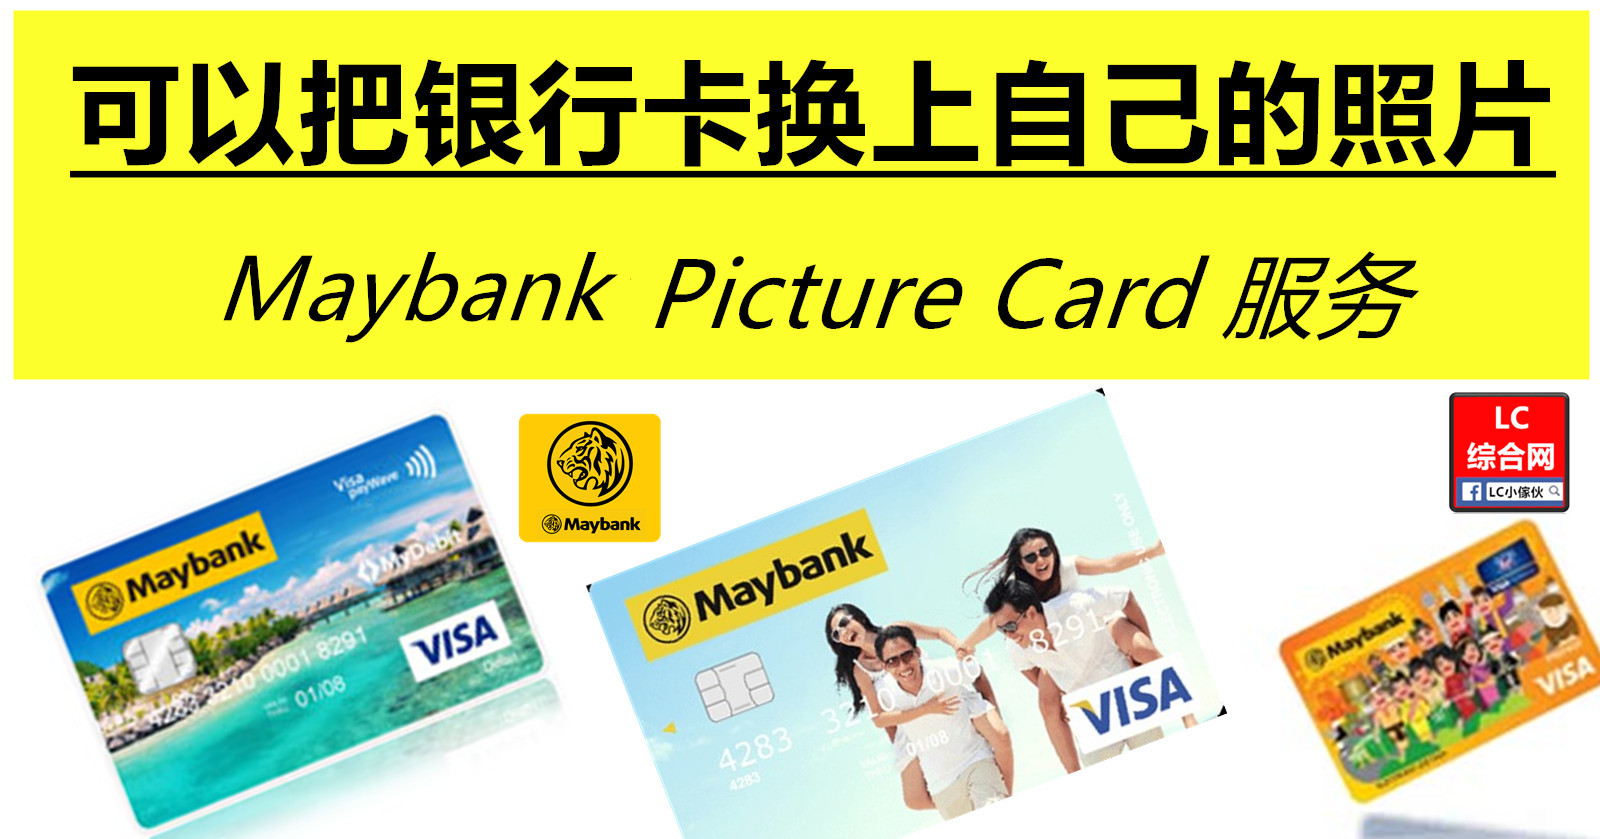 Maybank Card 可自定义更换图片 | LC 小傢伙綜合網